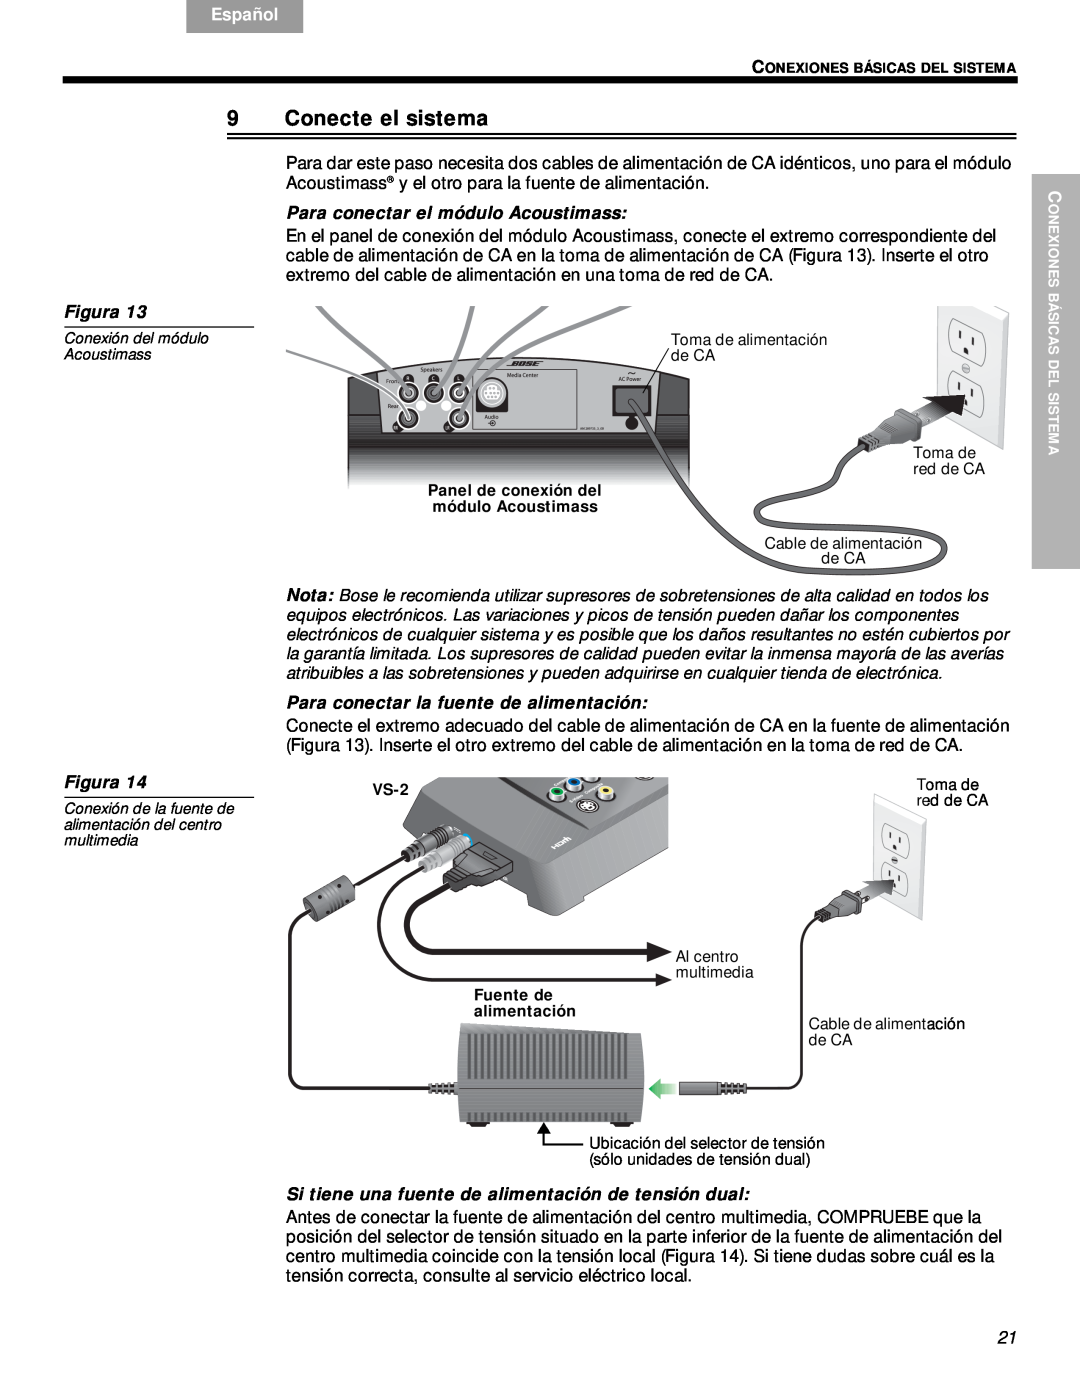 Bose VS-2 manual Conecte el sistema, Para conectar el módulo Acoustimass, Para conectar la fuente de alimentación, English 